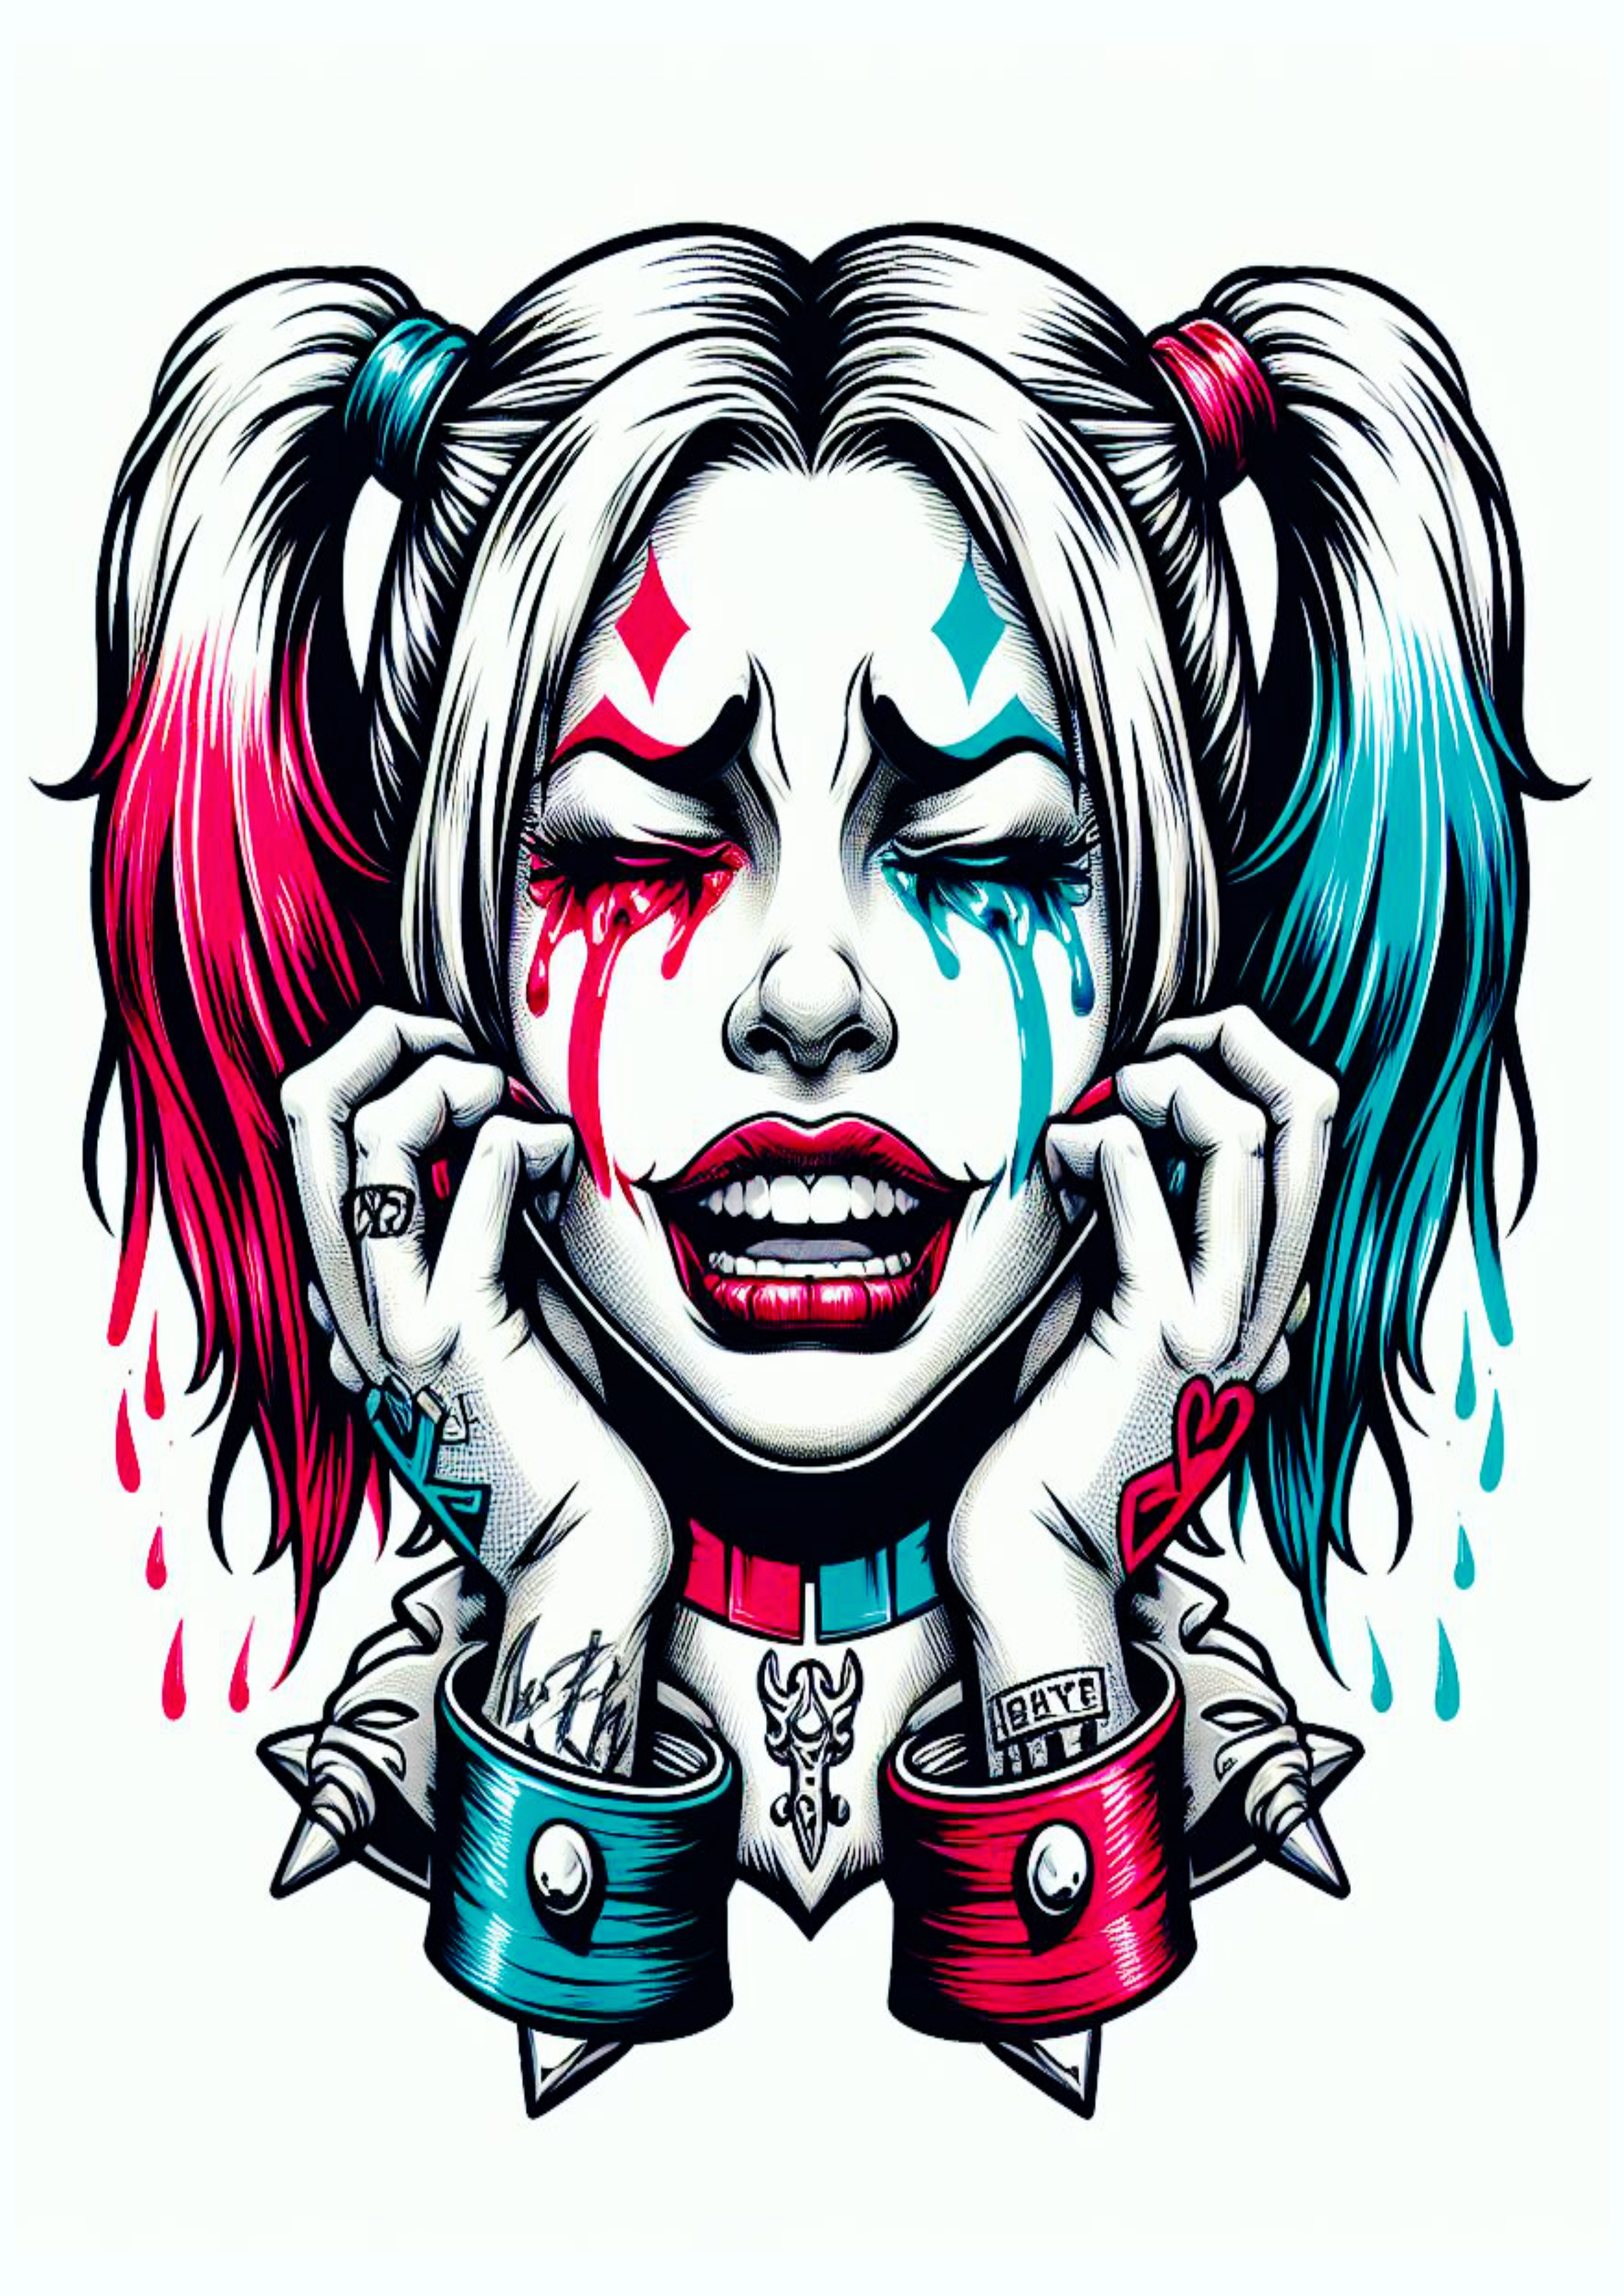 Arlequina chorando desenho colorida para tatuagem Harley Quinn desespero psicopata perturbadora artes visuais png